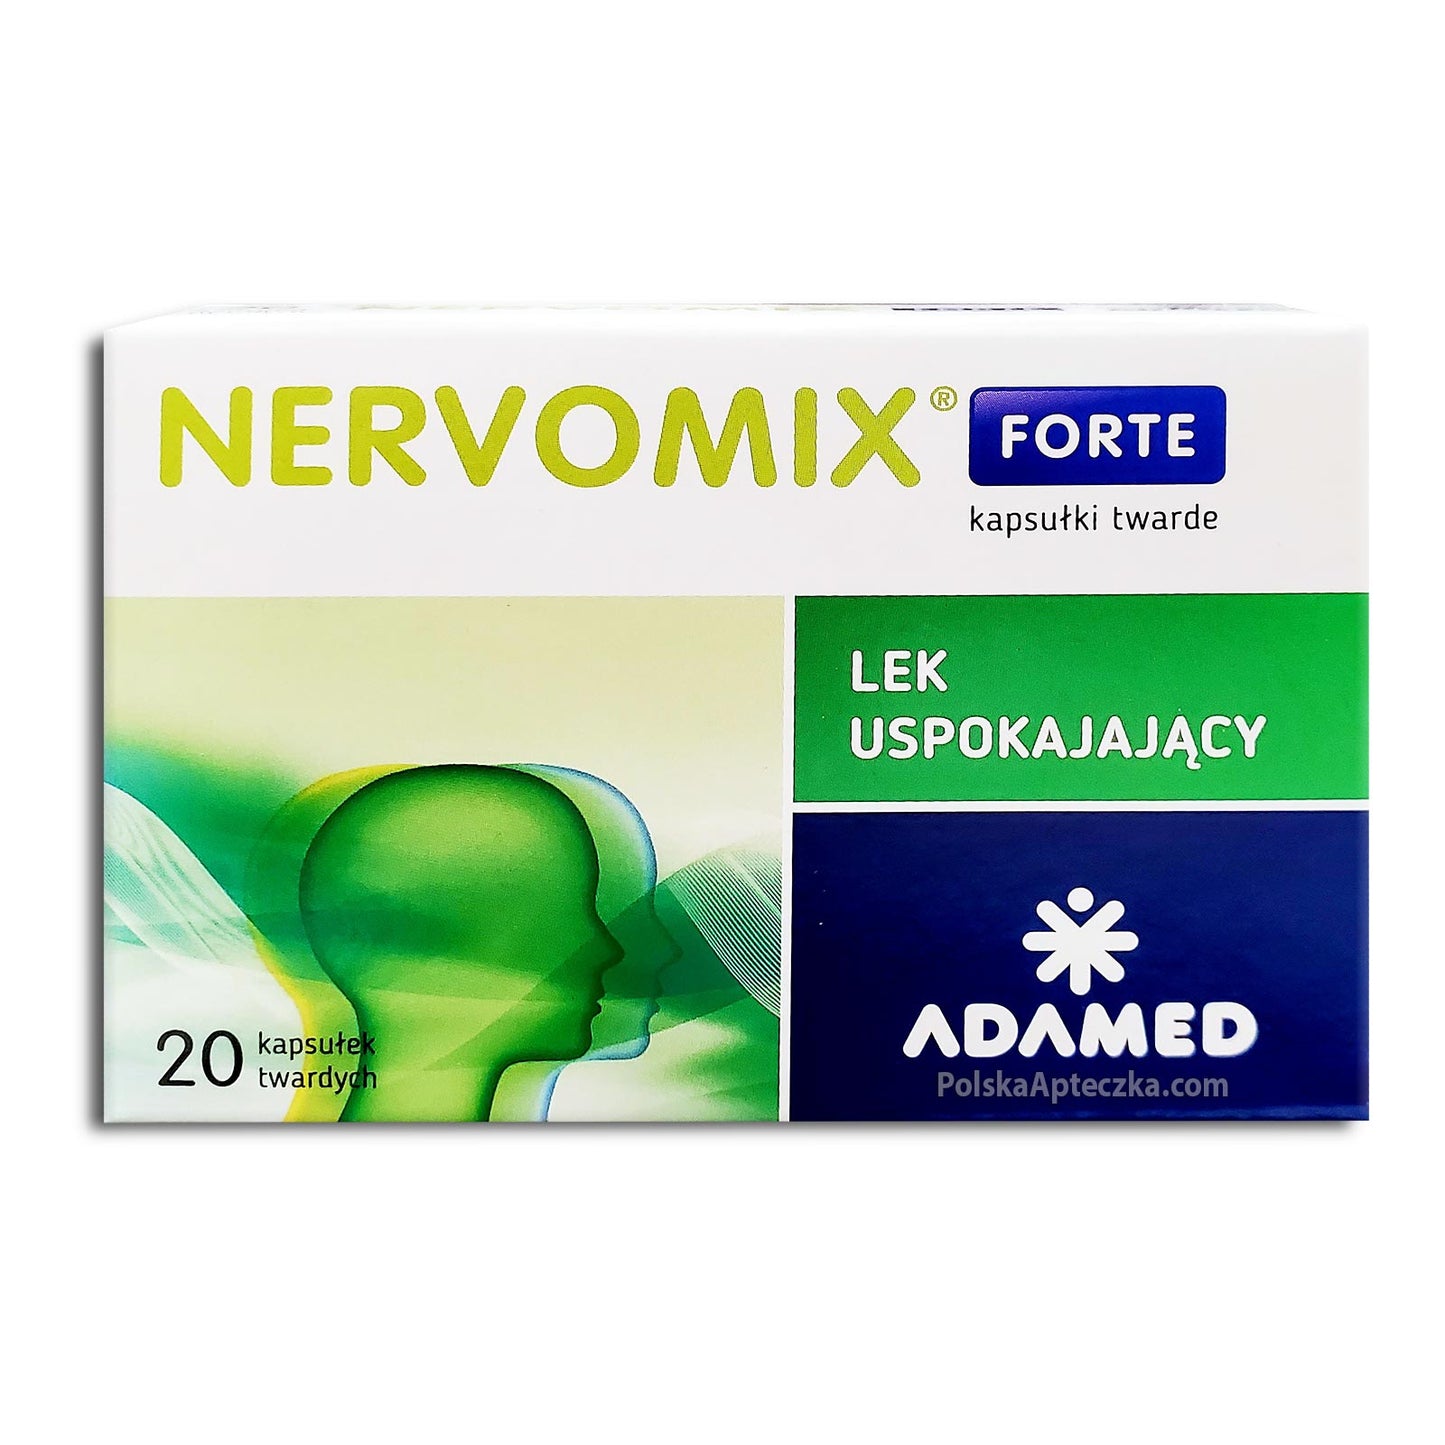 Nervomix Forte 20 tablets